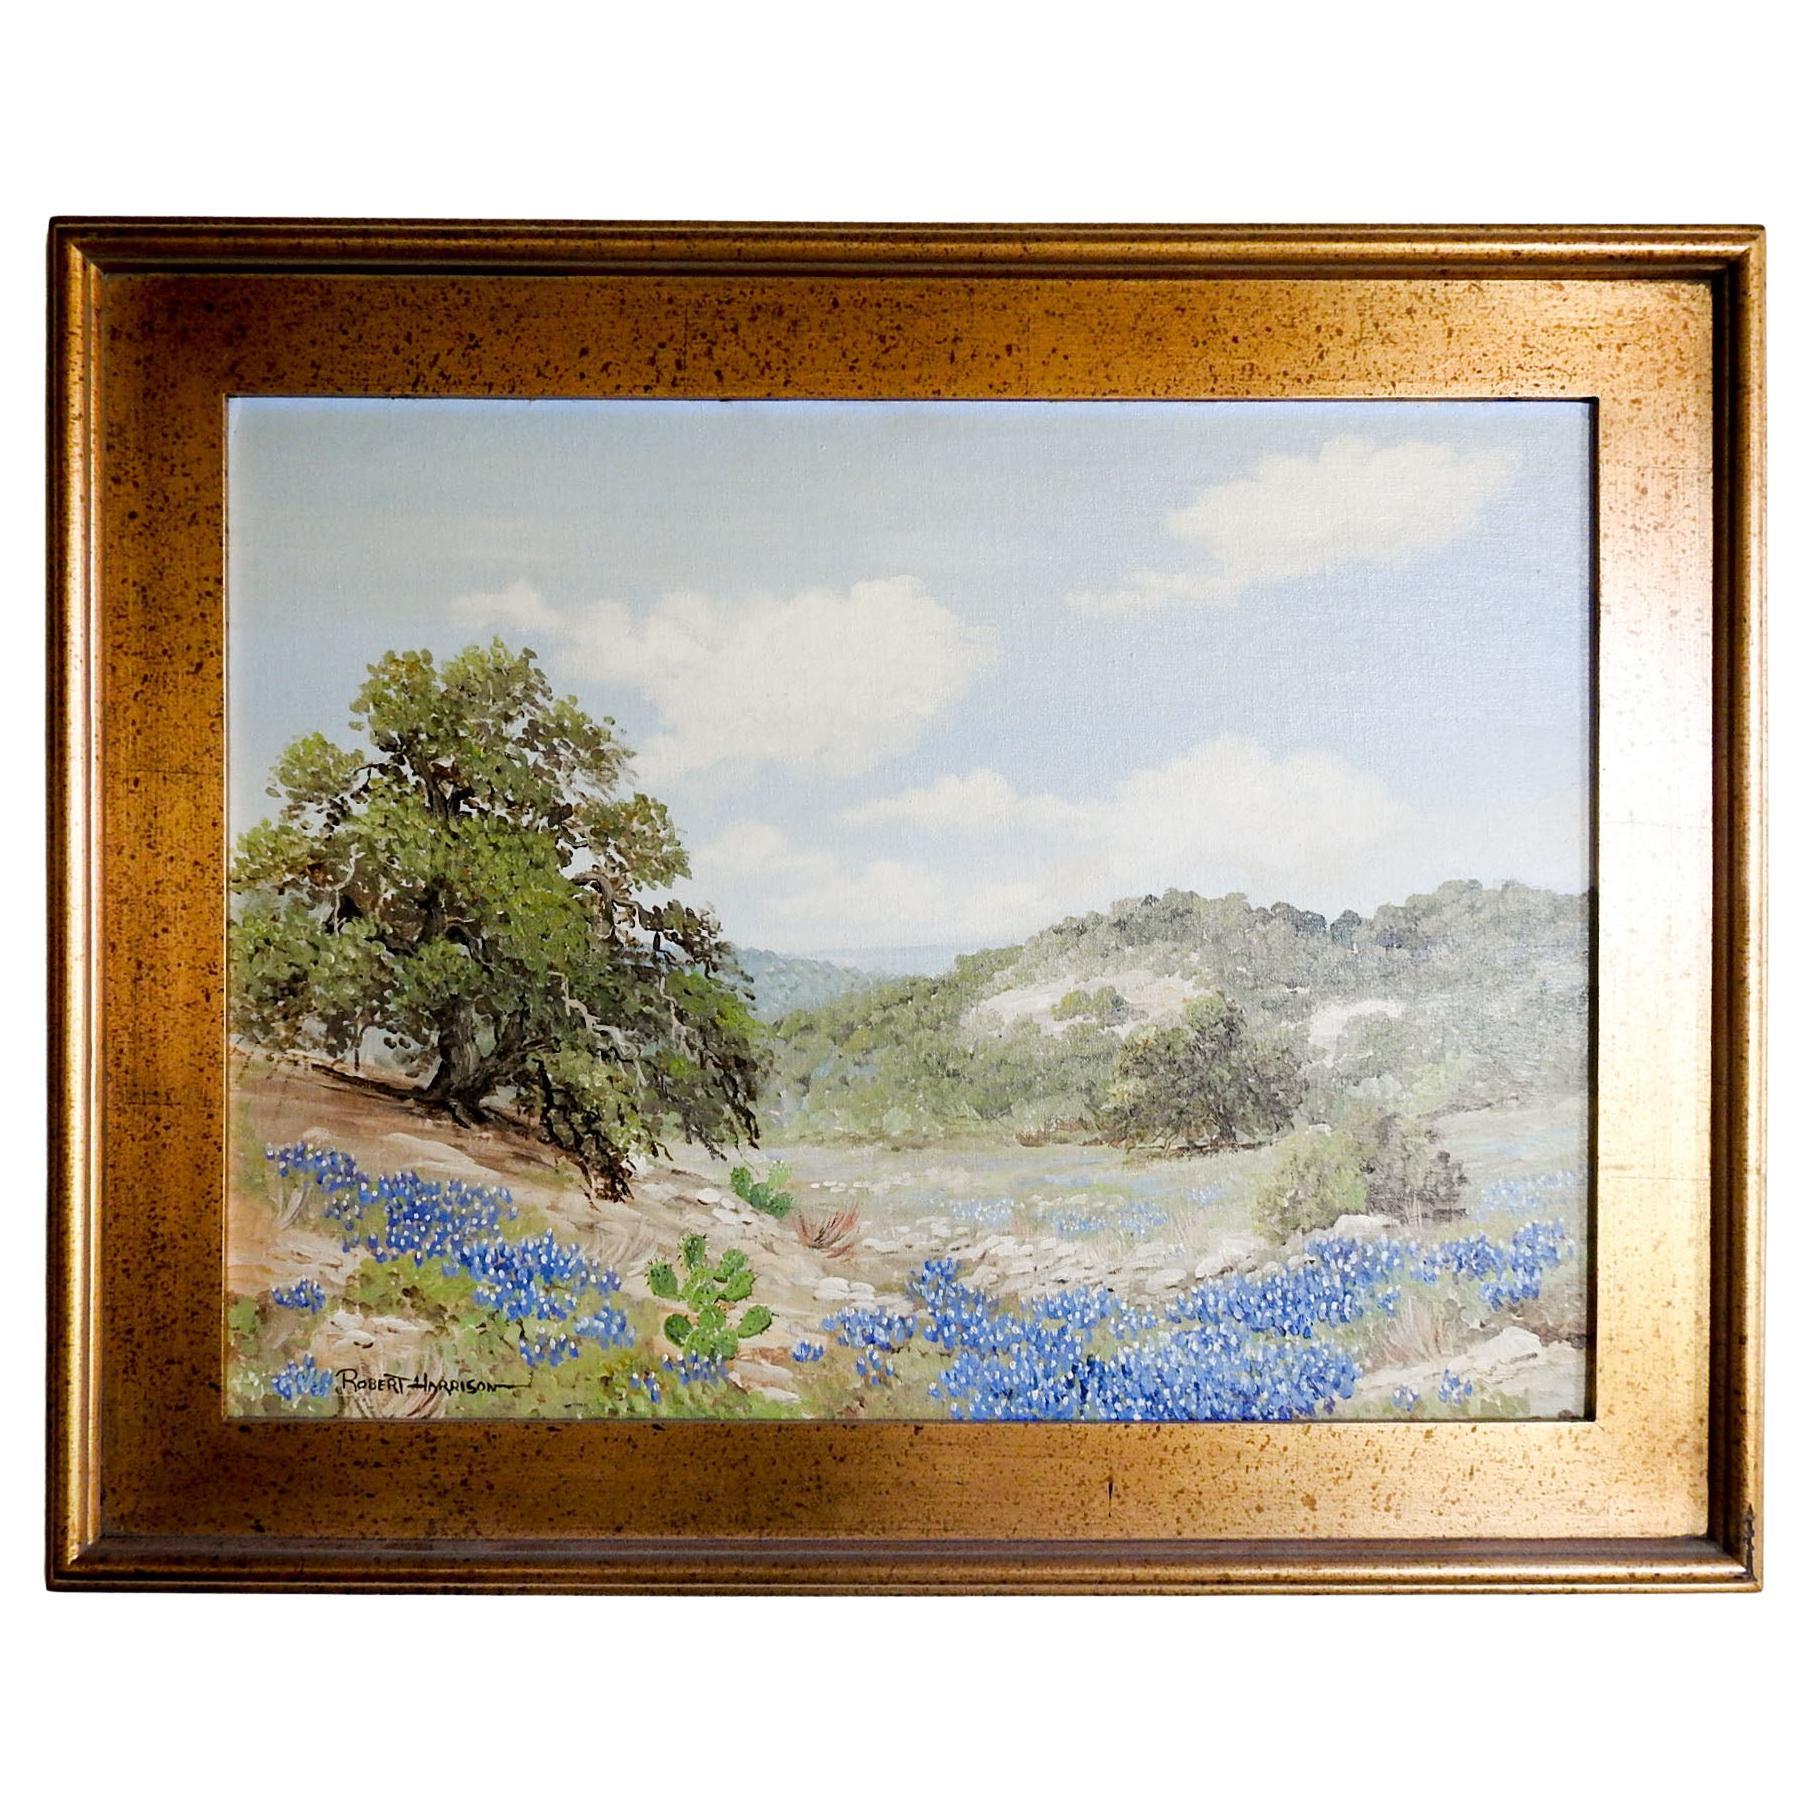 Robert Harrison - Peinture de paysage Bluebonnet